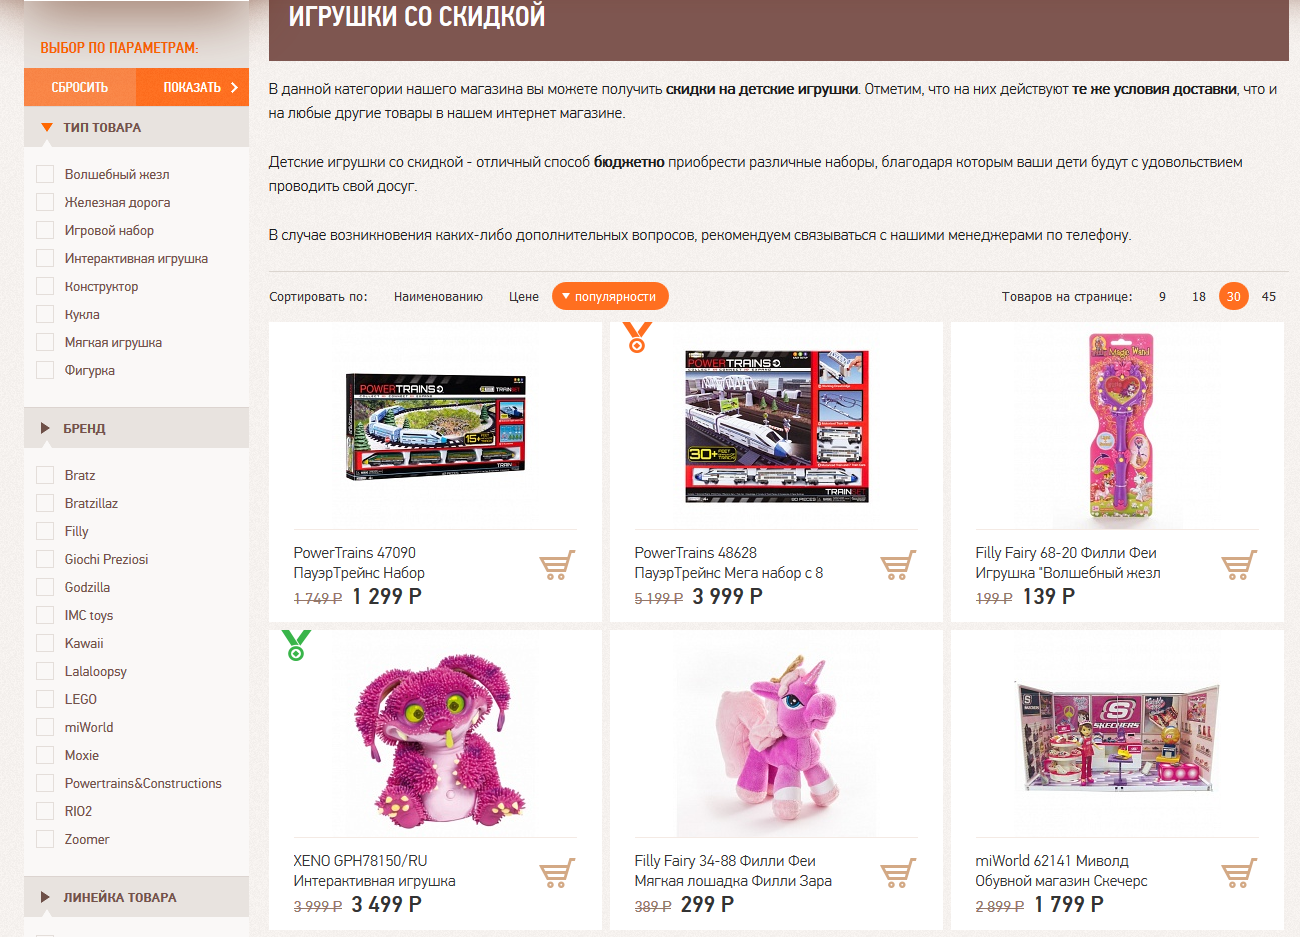 Toys чита. Каталог игрушек. Купоны для магазинов игрушек. Той ру интернет магазин. Toy ru интернет магазин каталог.